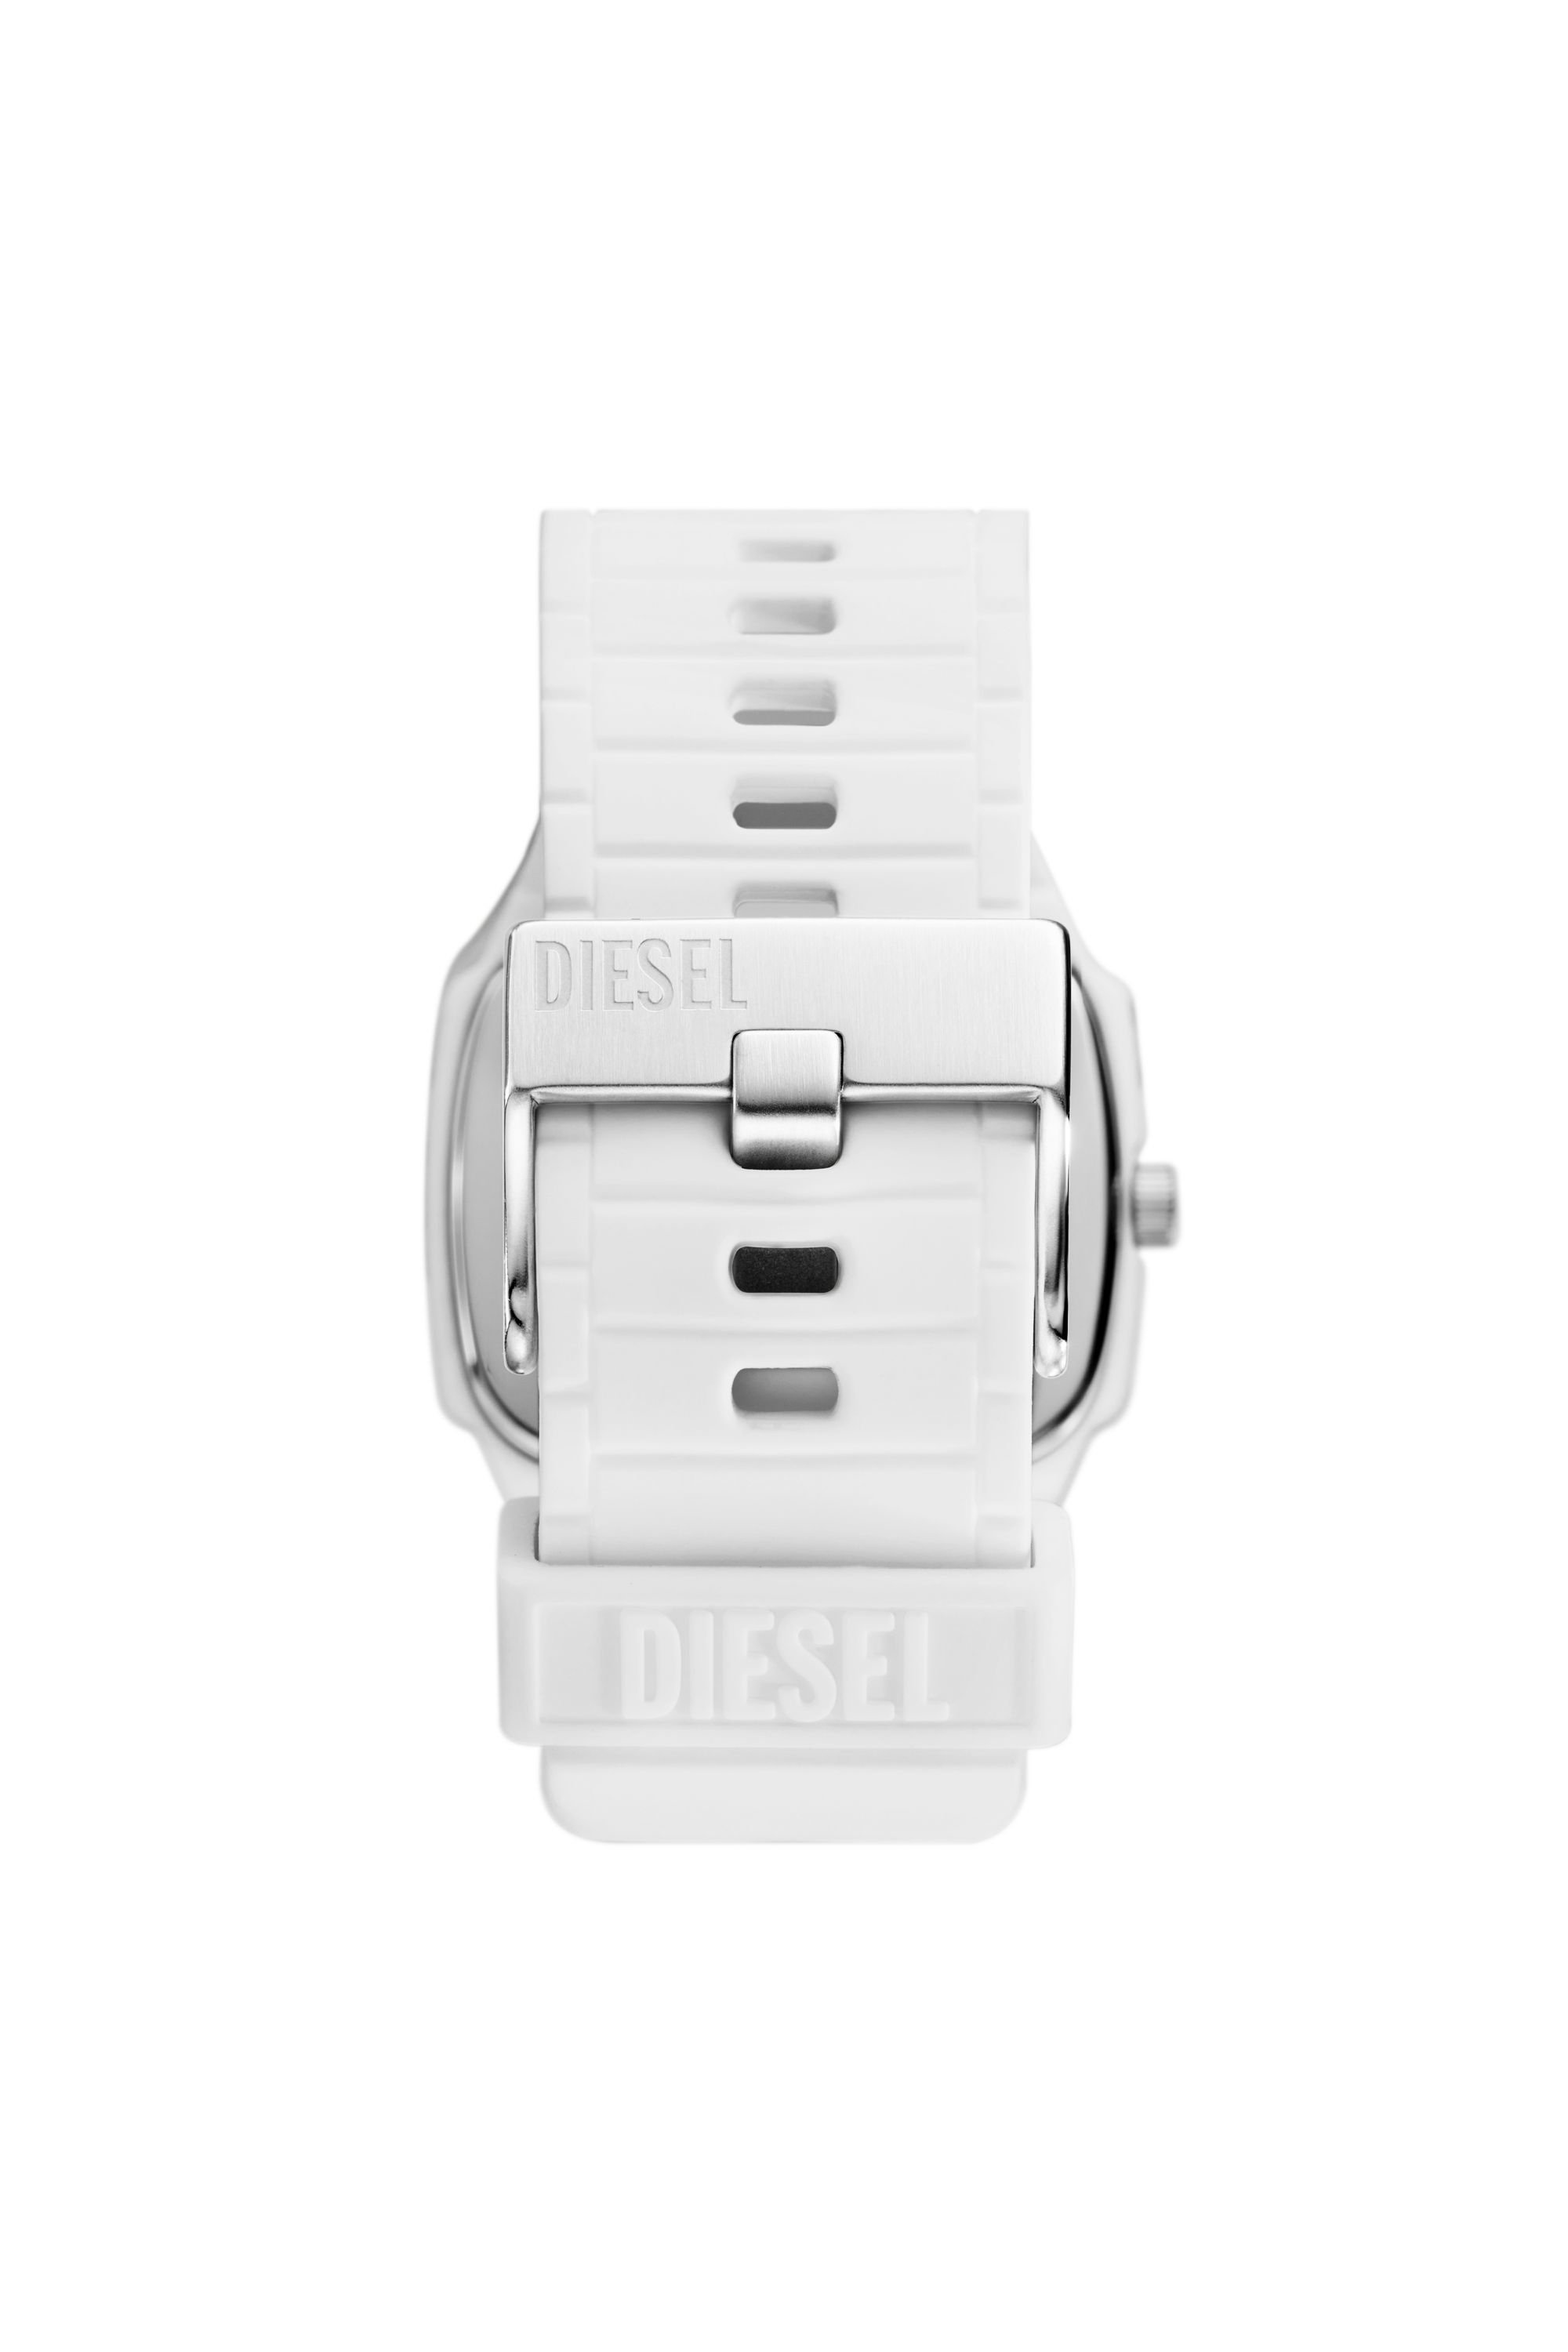 Diesel - DZ2204, Weiß - Image 2